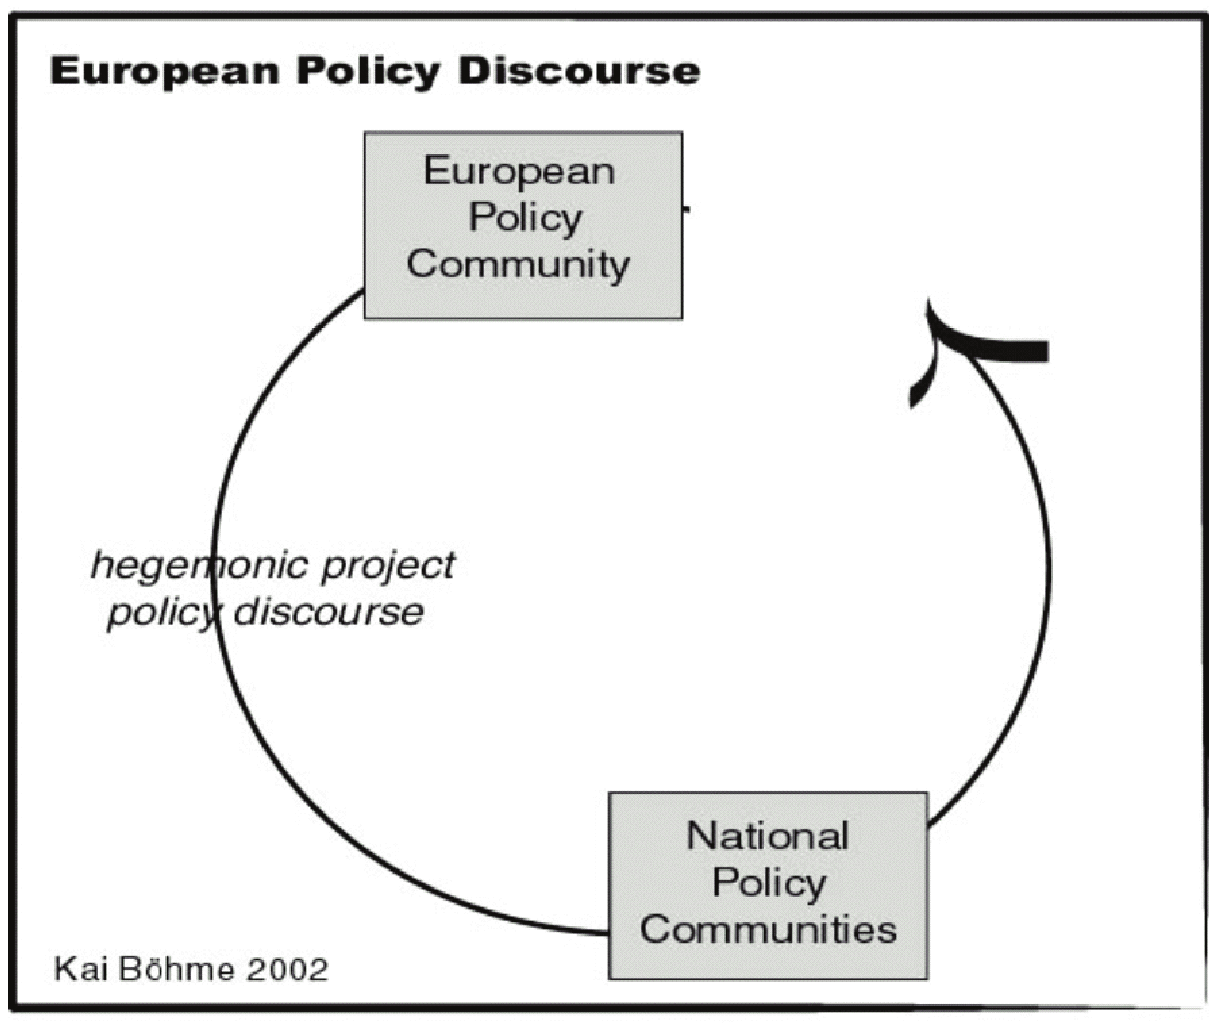 PLANERING MED NYA FÖRUTSÄTTNINGAR representanter bli avgörande för att påverka den politiska diskursen på hemmaplan. Precis detta har också skett i fallet ESDP och Sverige (Böhme 2002).